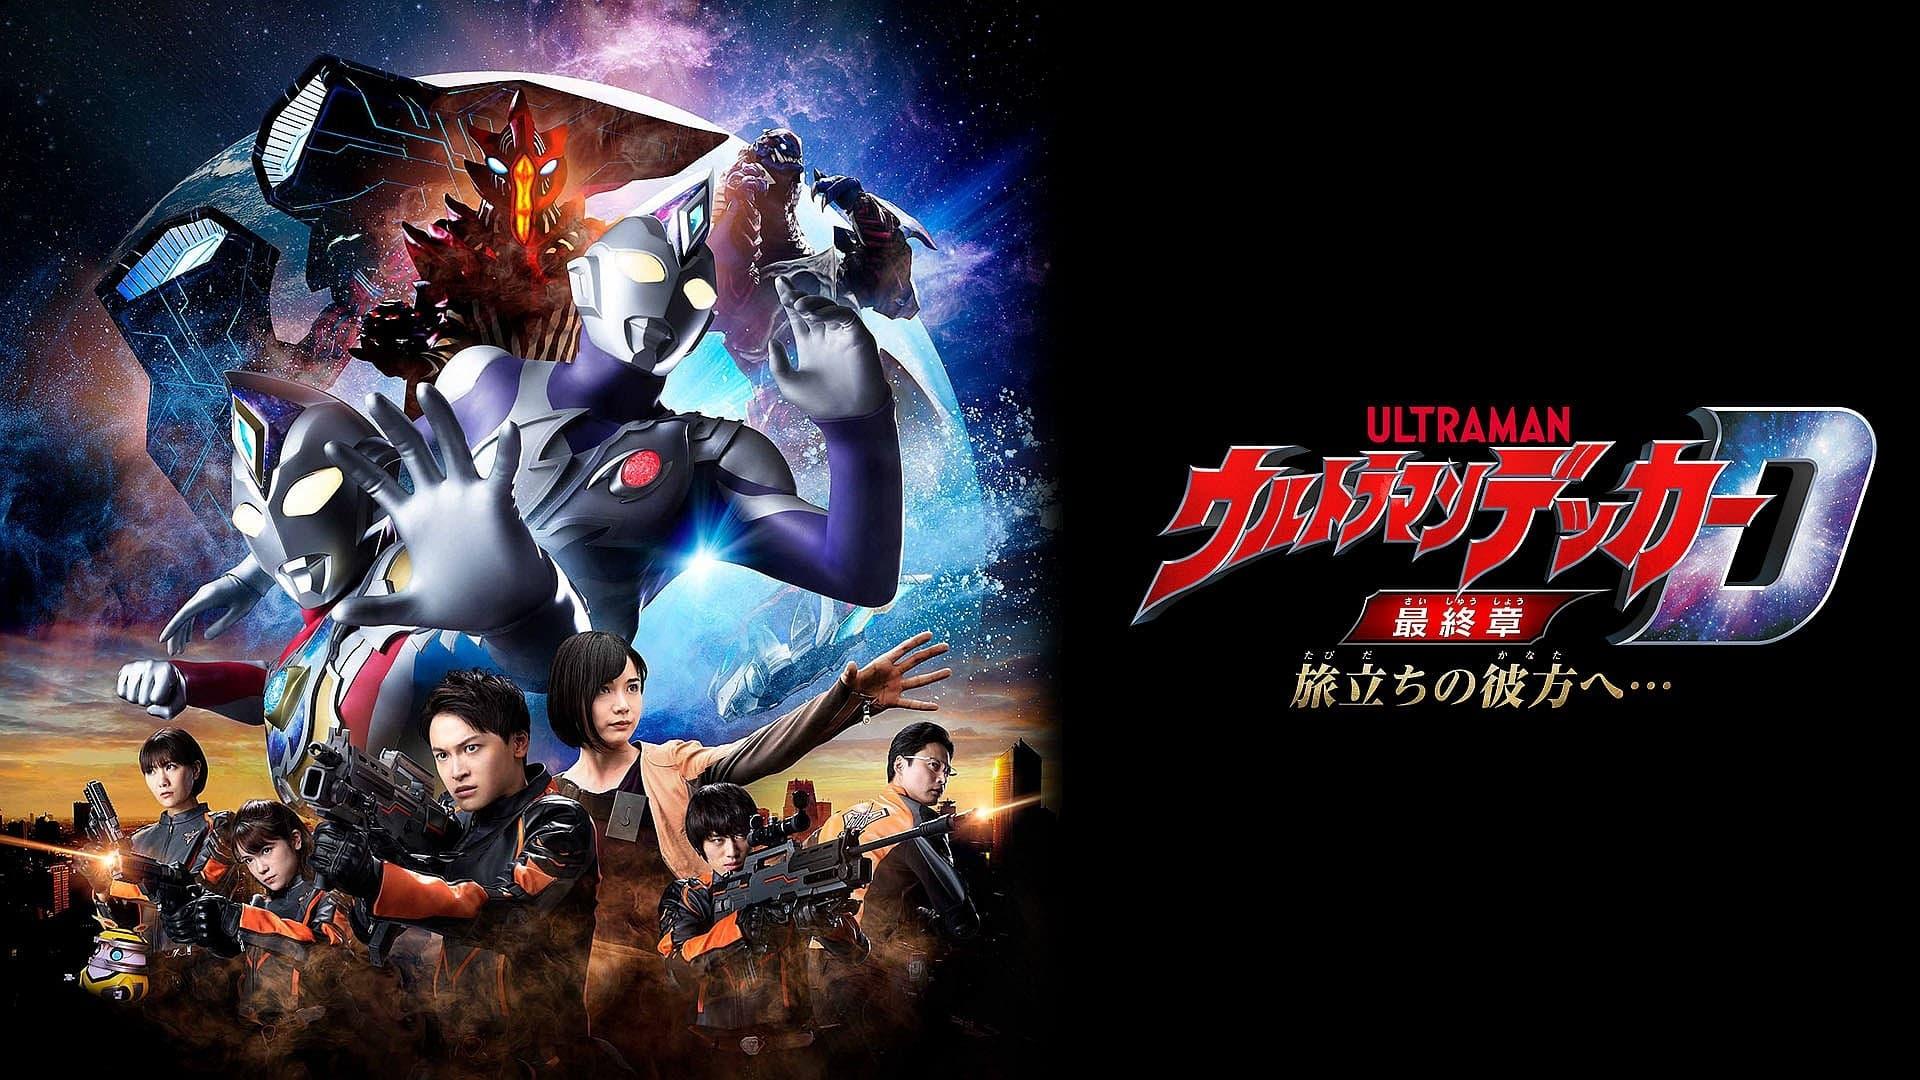 Ultraman Decker Finale: Journey to Beyond backdrop